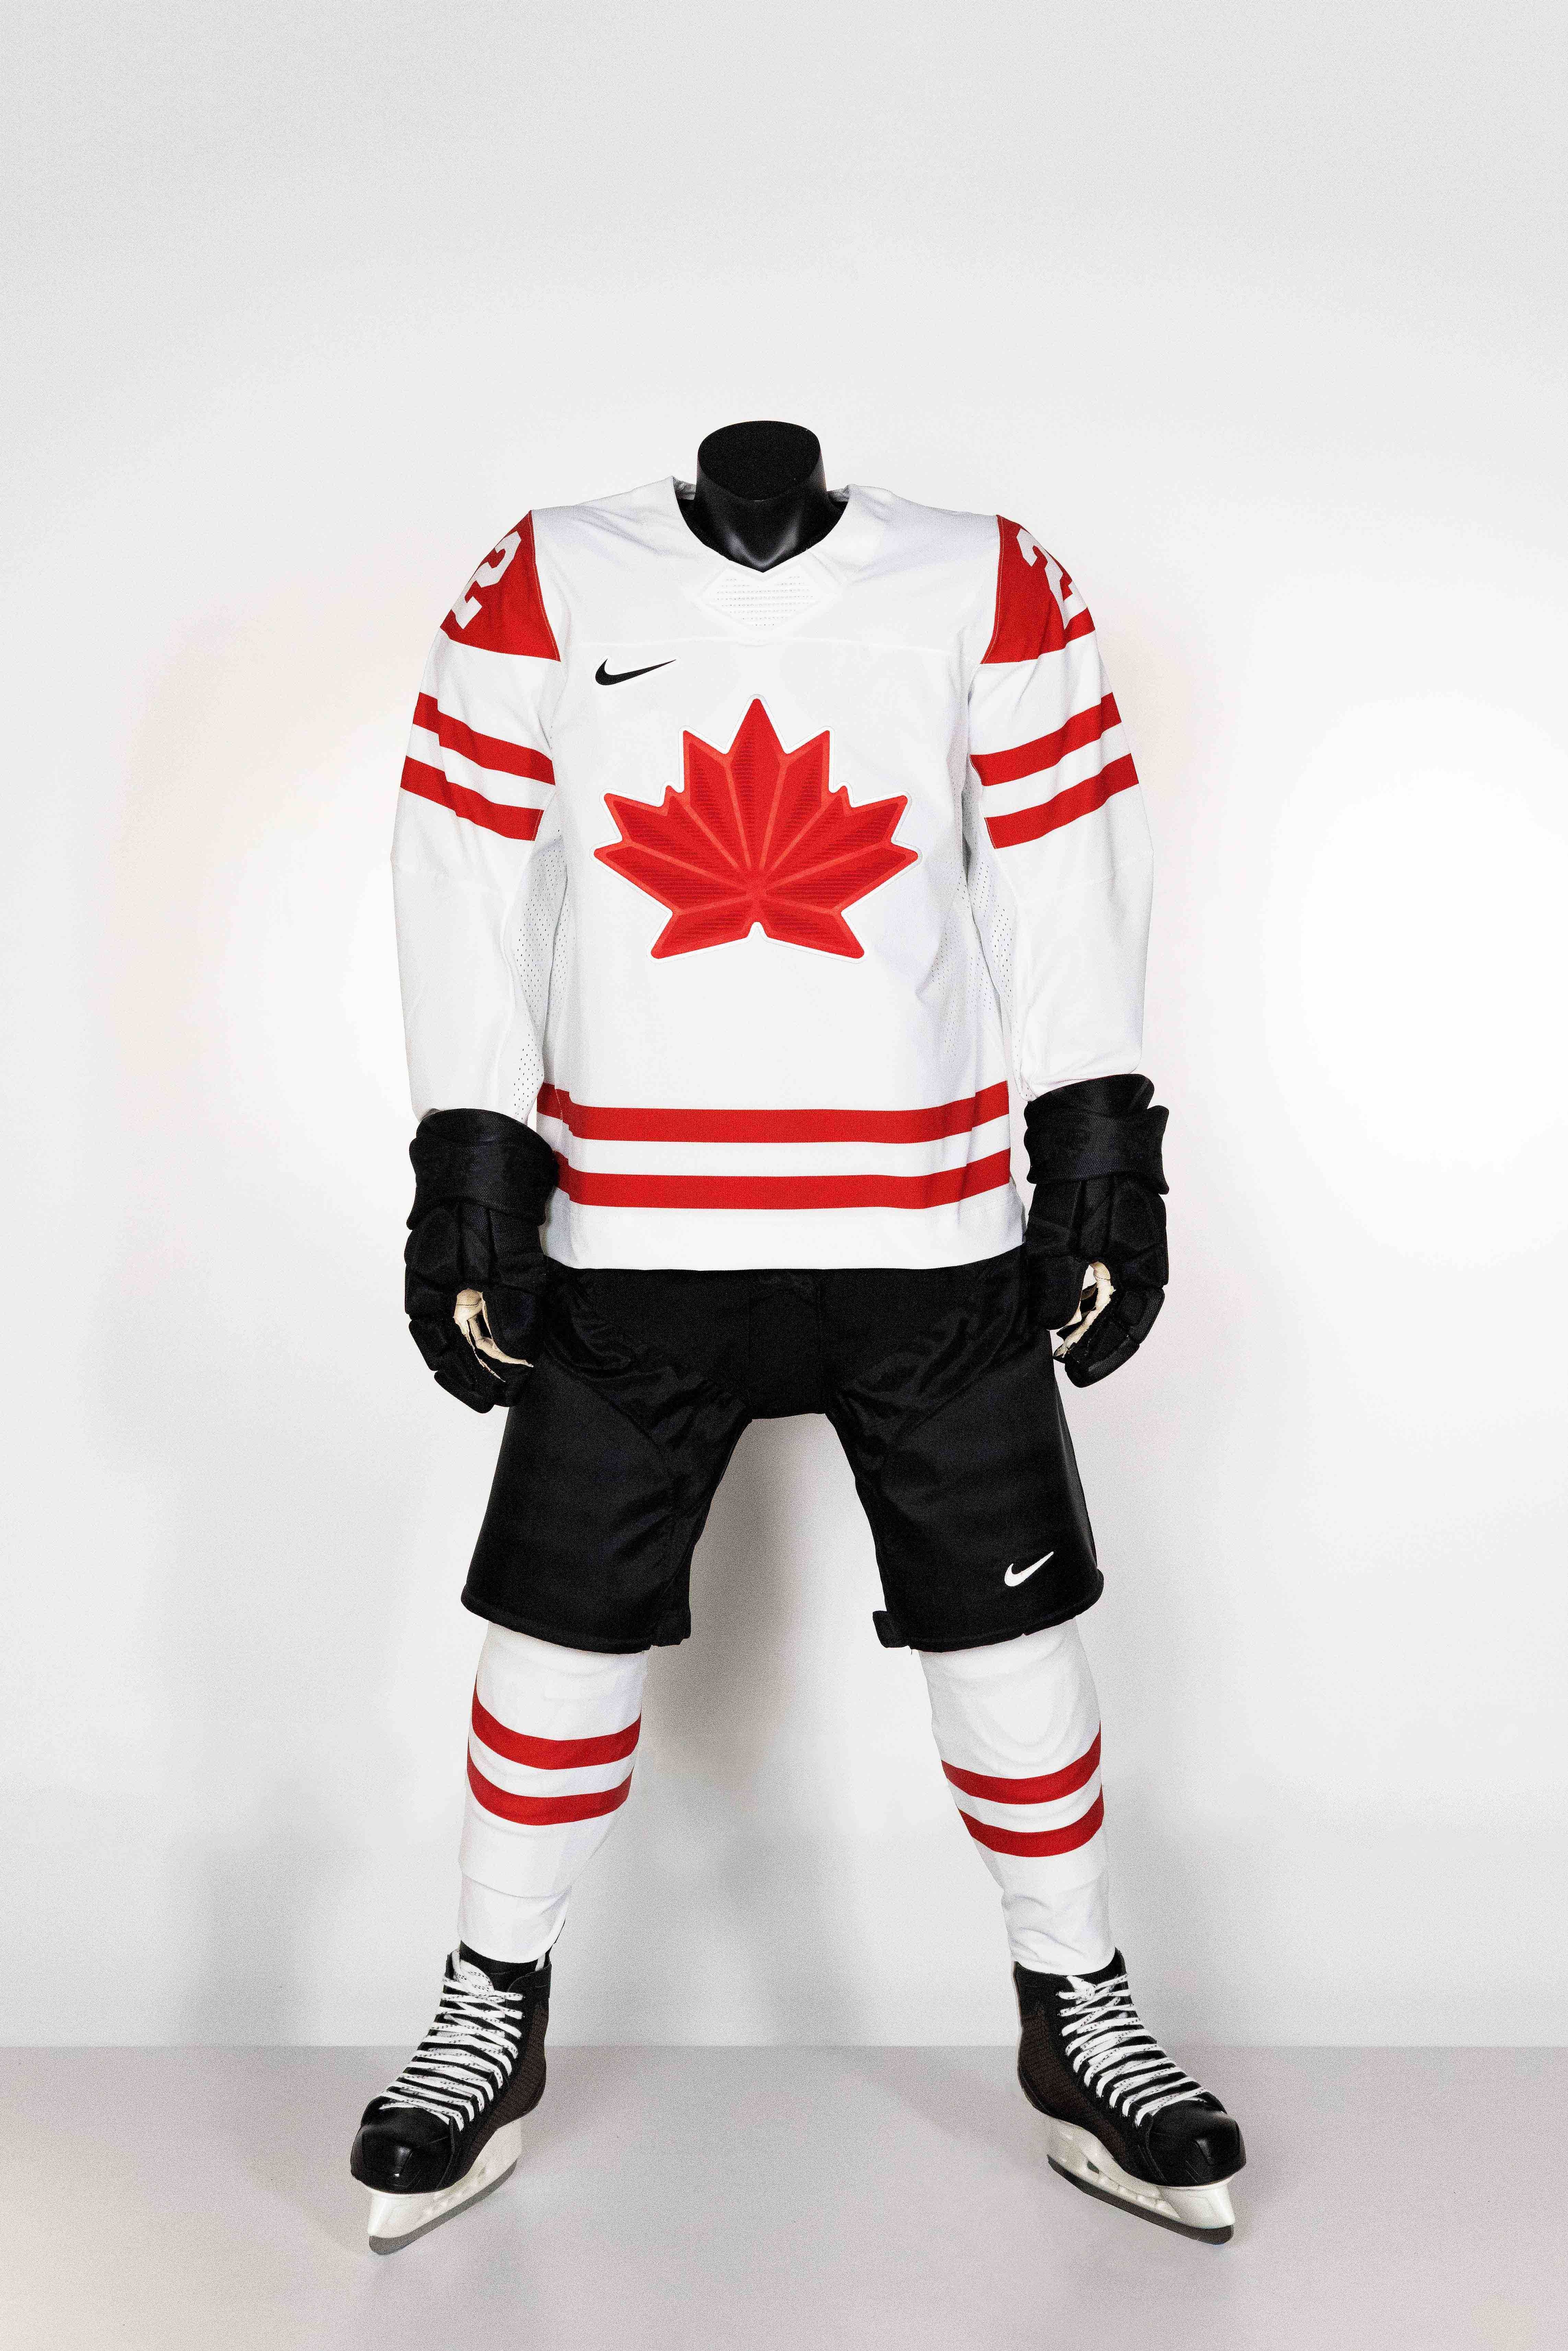 Olympic Hockey 2022 Jerseys Revealed!!! 